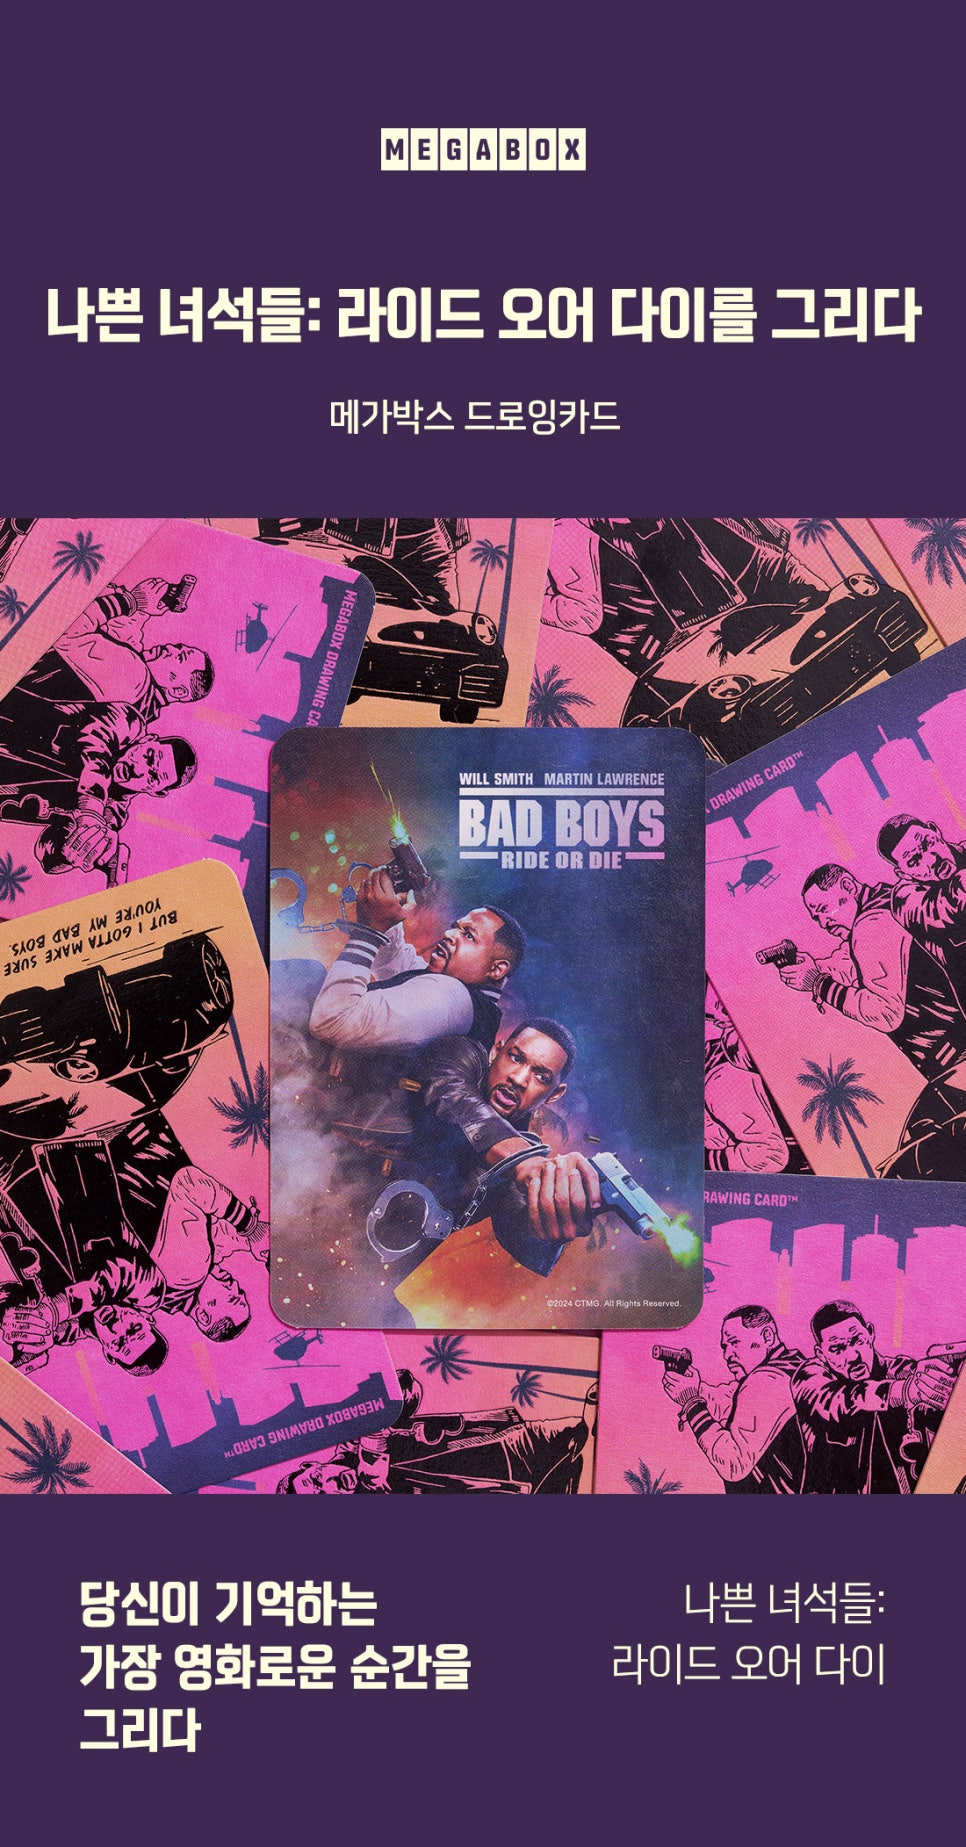 영화 나쁜 녀석들4 라이드 오어 다이 1주차 특전 아이맥스 4DX 스크린X MX4D 포스터 실물 드로잉 카드